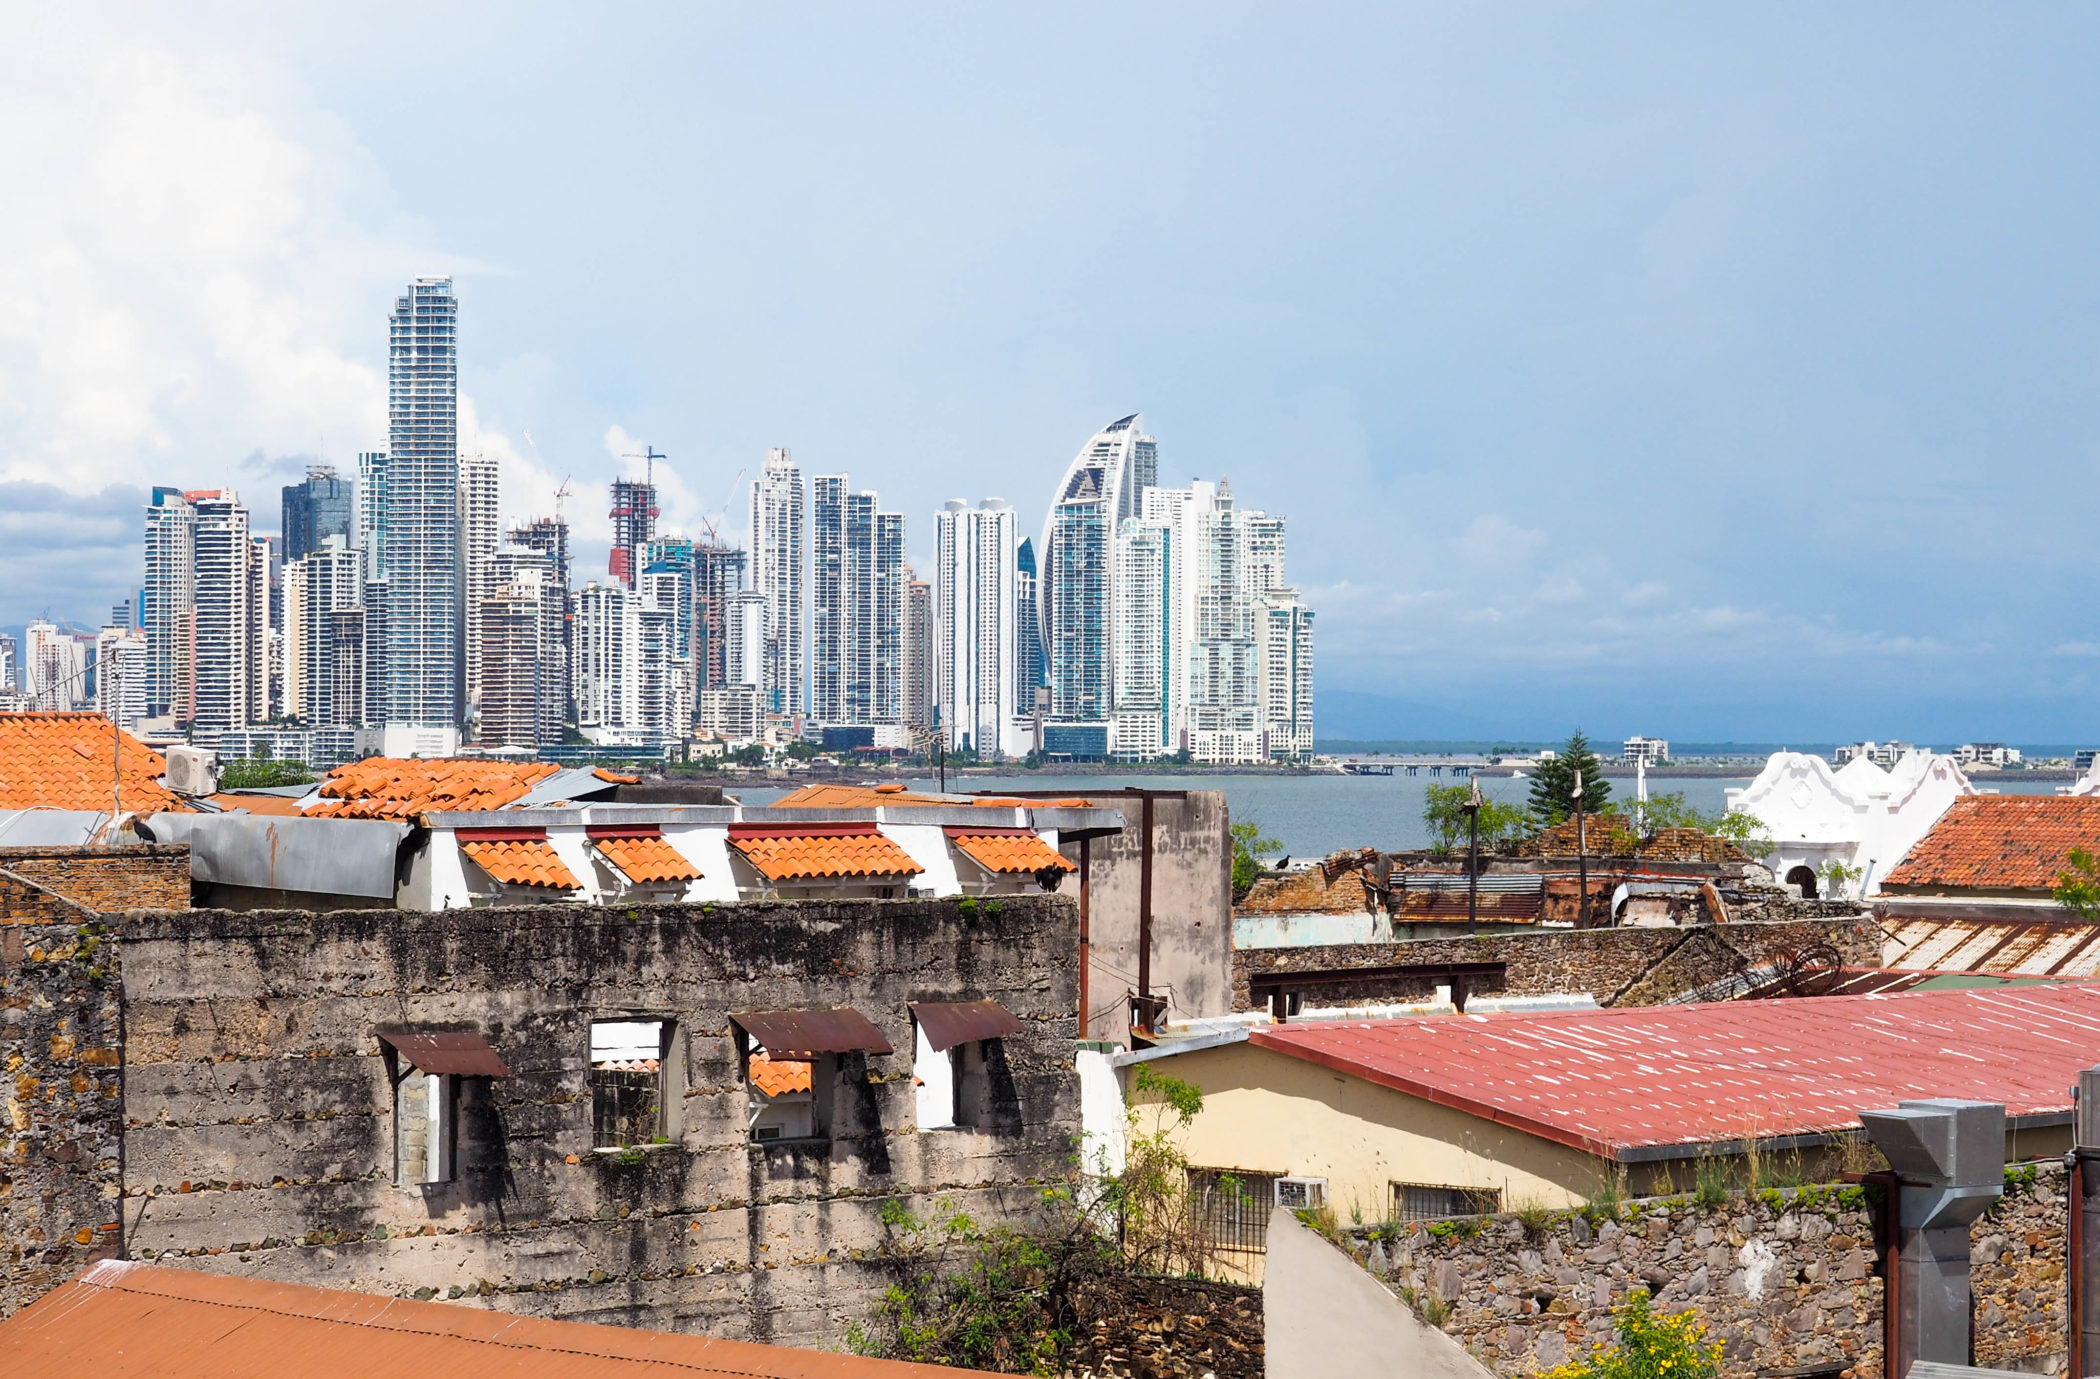 Panama-City-Altstadt-Casco-Viejo